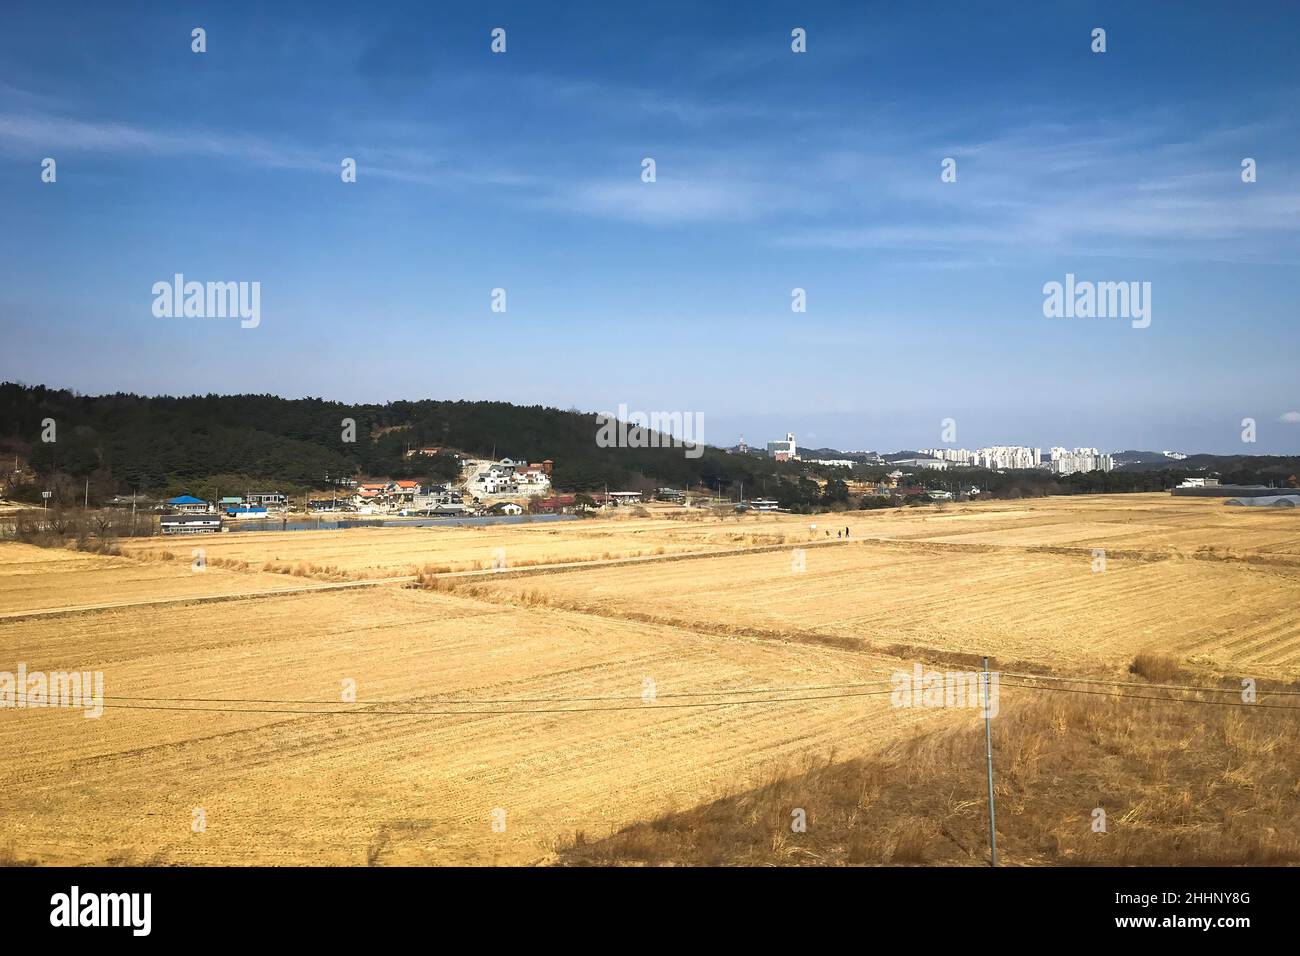 Vista panoramica del paesaggio rurale e dei campi agricoli nei pressi di Gangneung, Corea del Sud Foto Stock